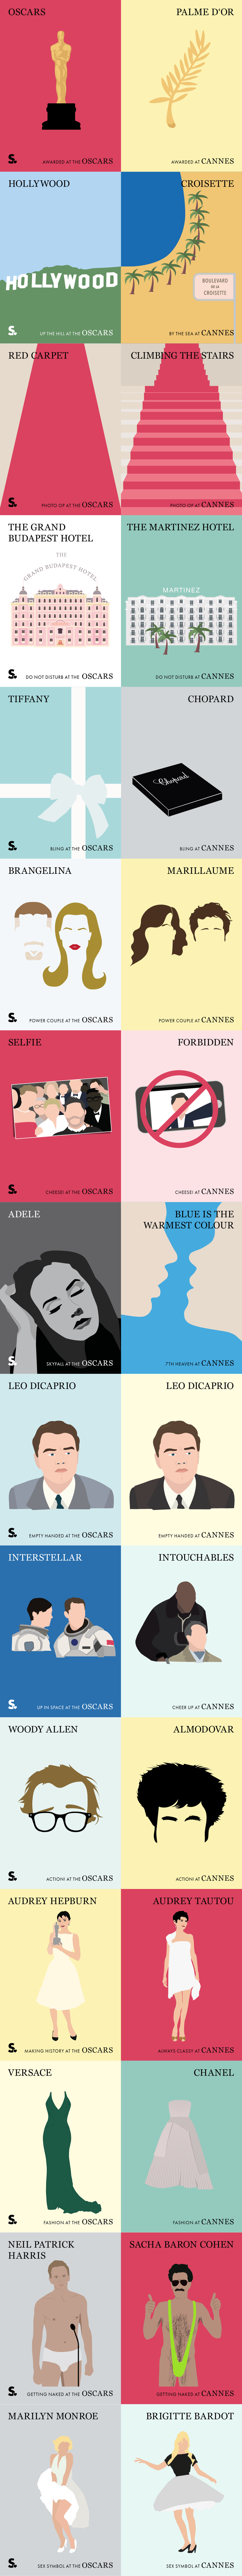 Cannes vs Oscars